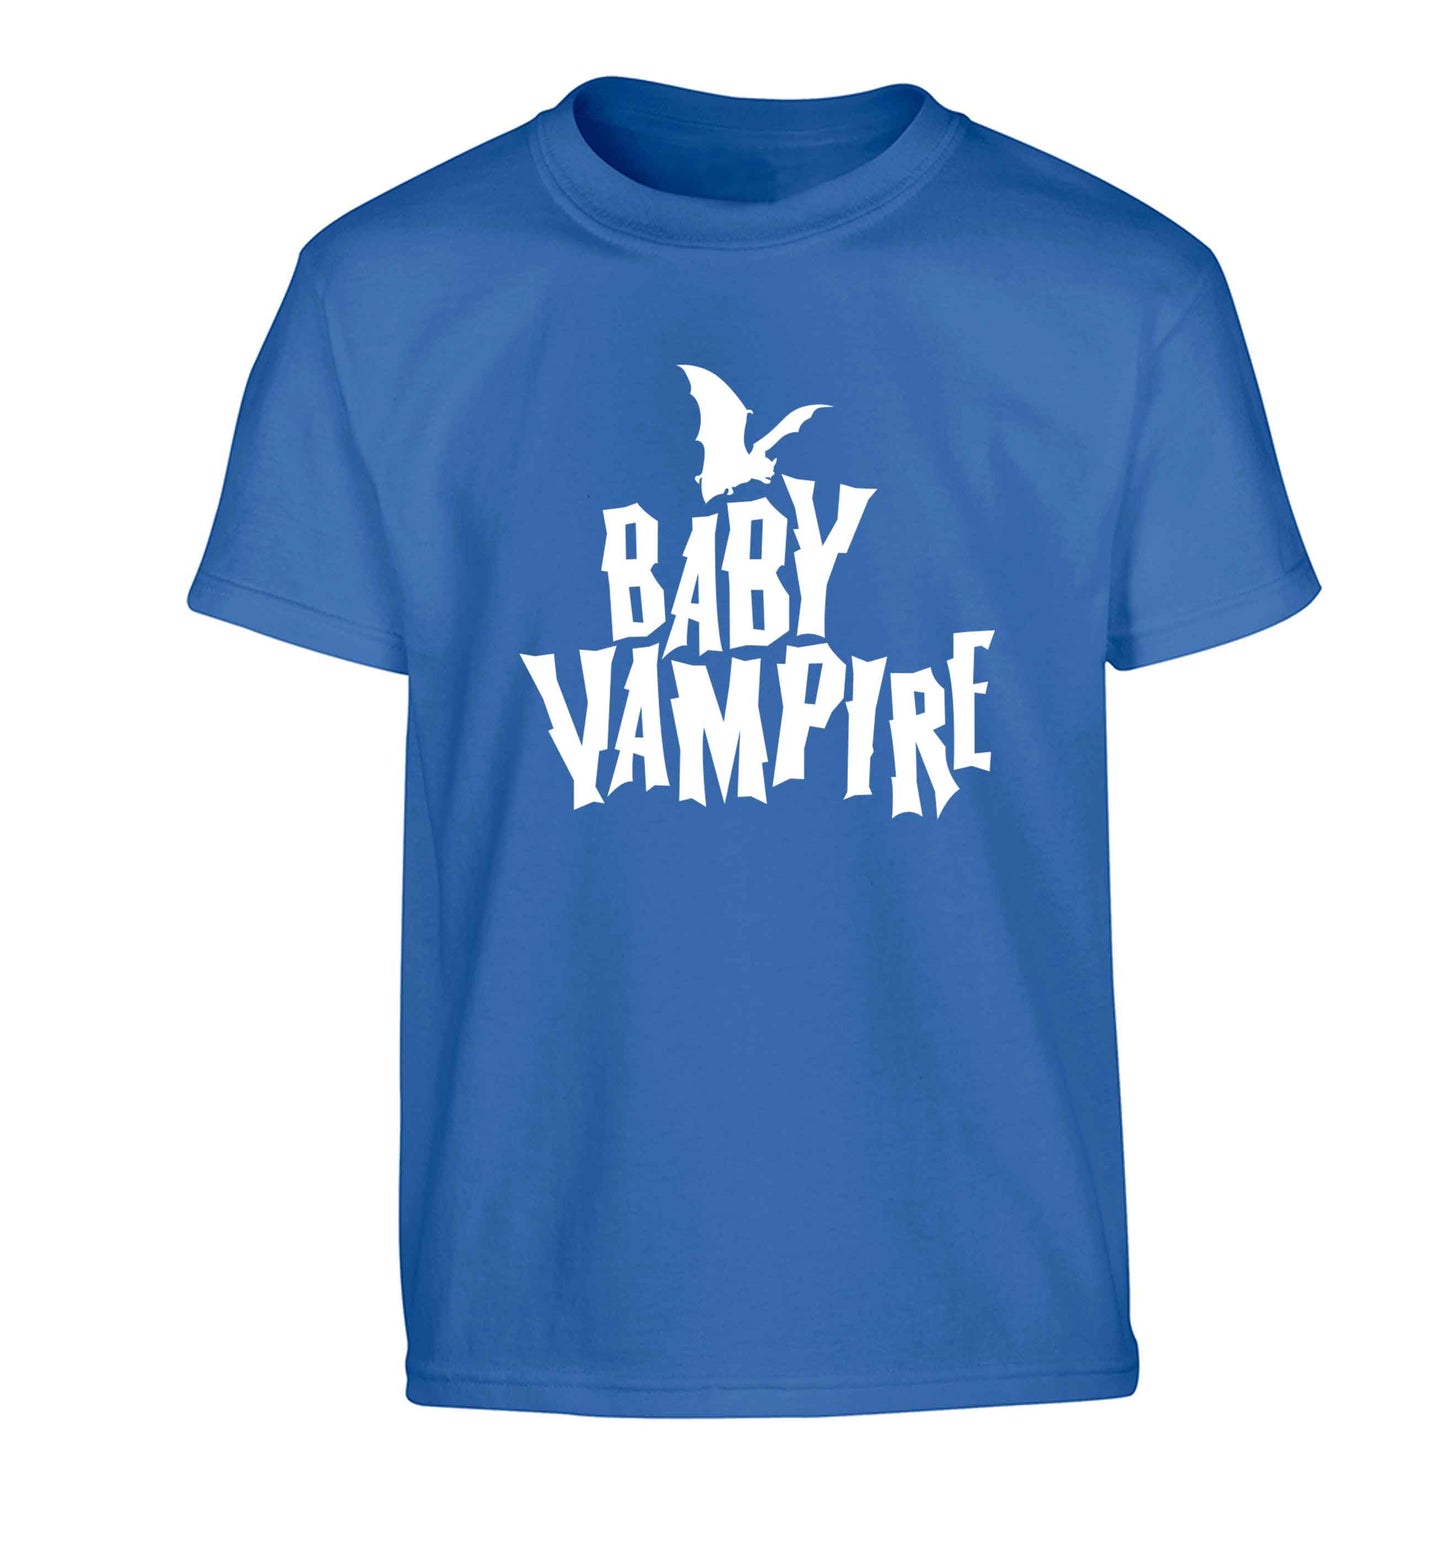 Baby vampire Children's blue Tshirt 12-13 Years